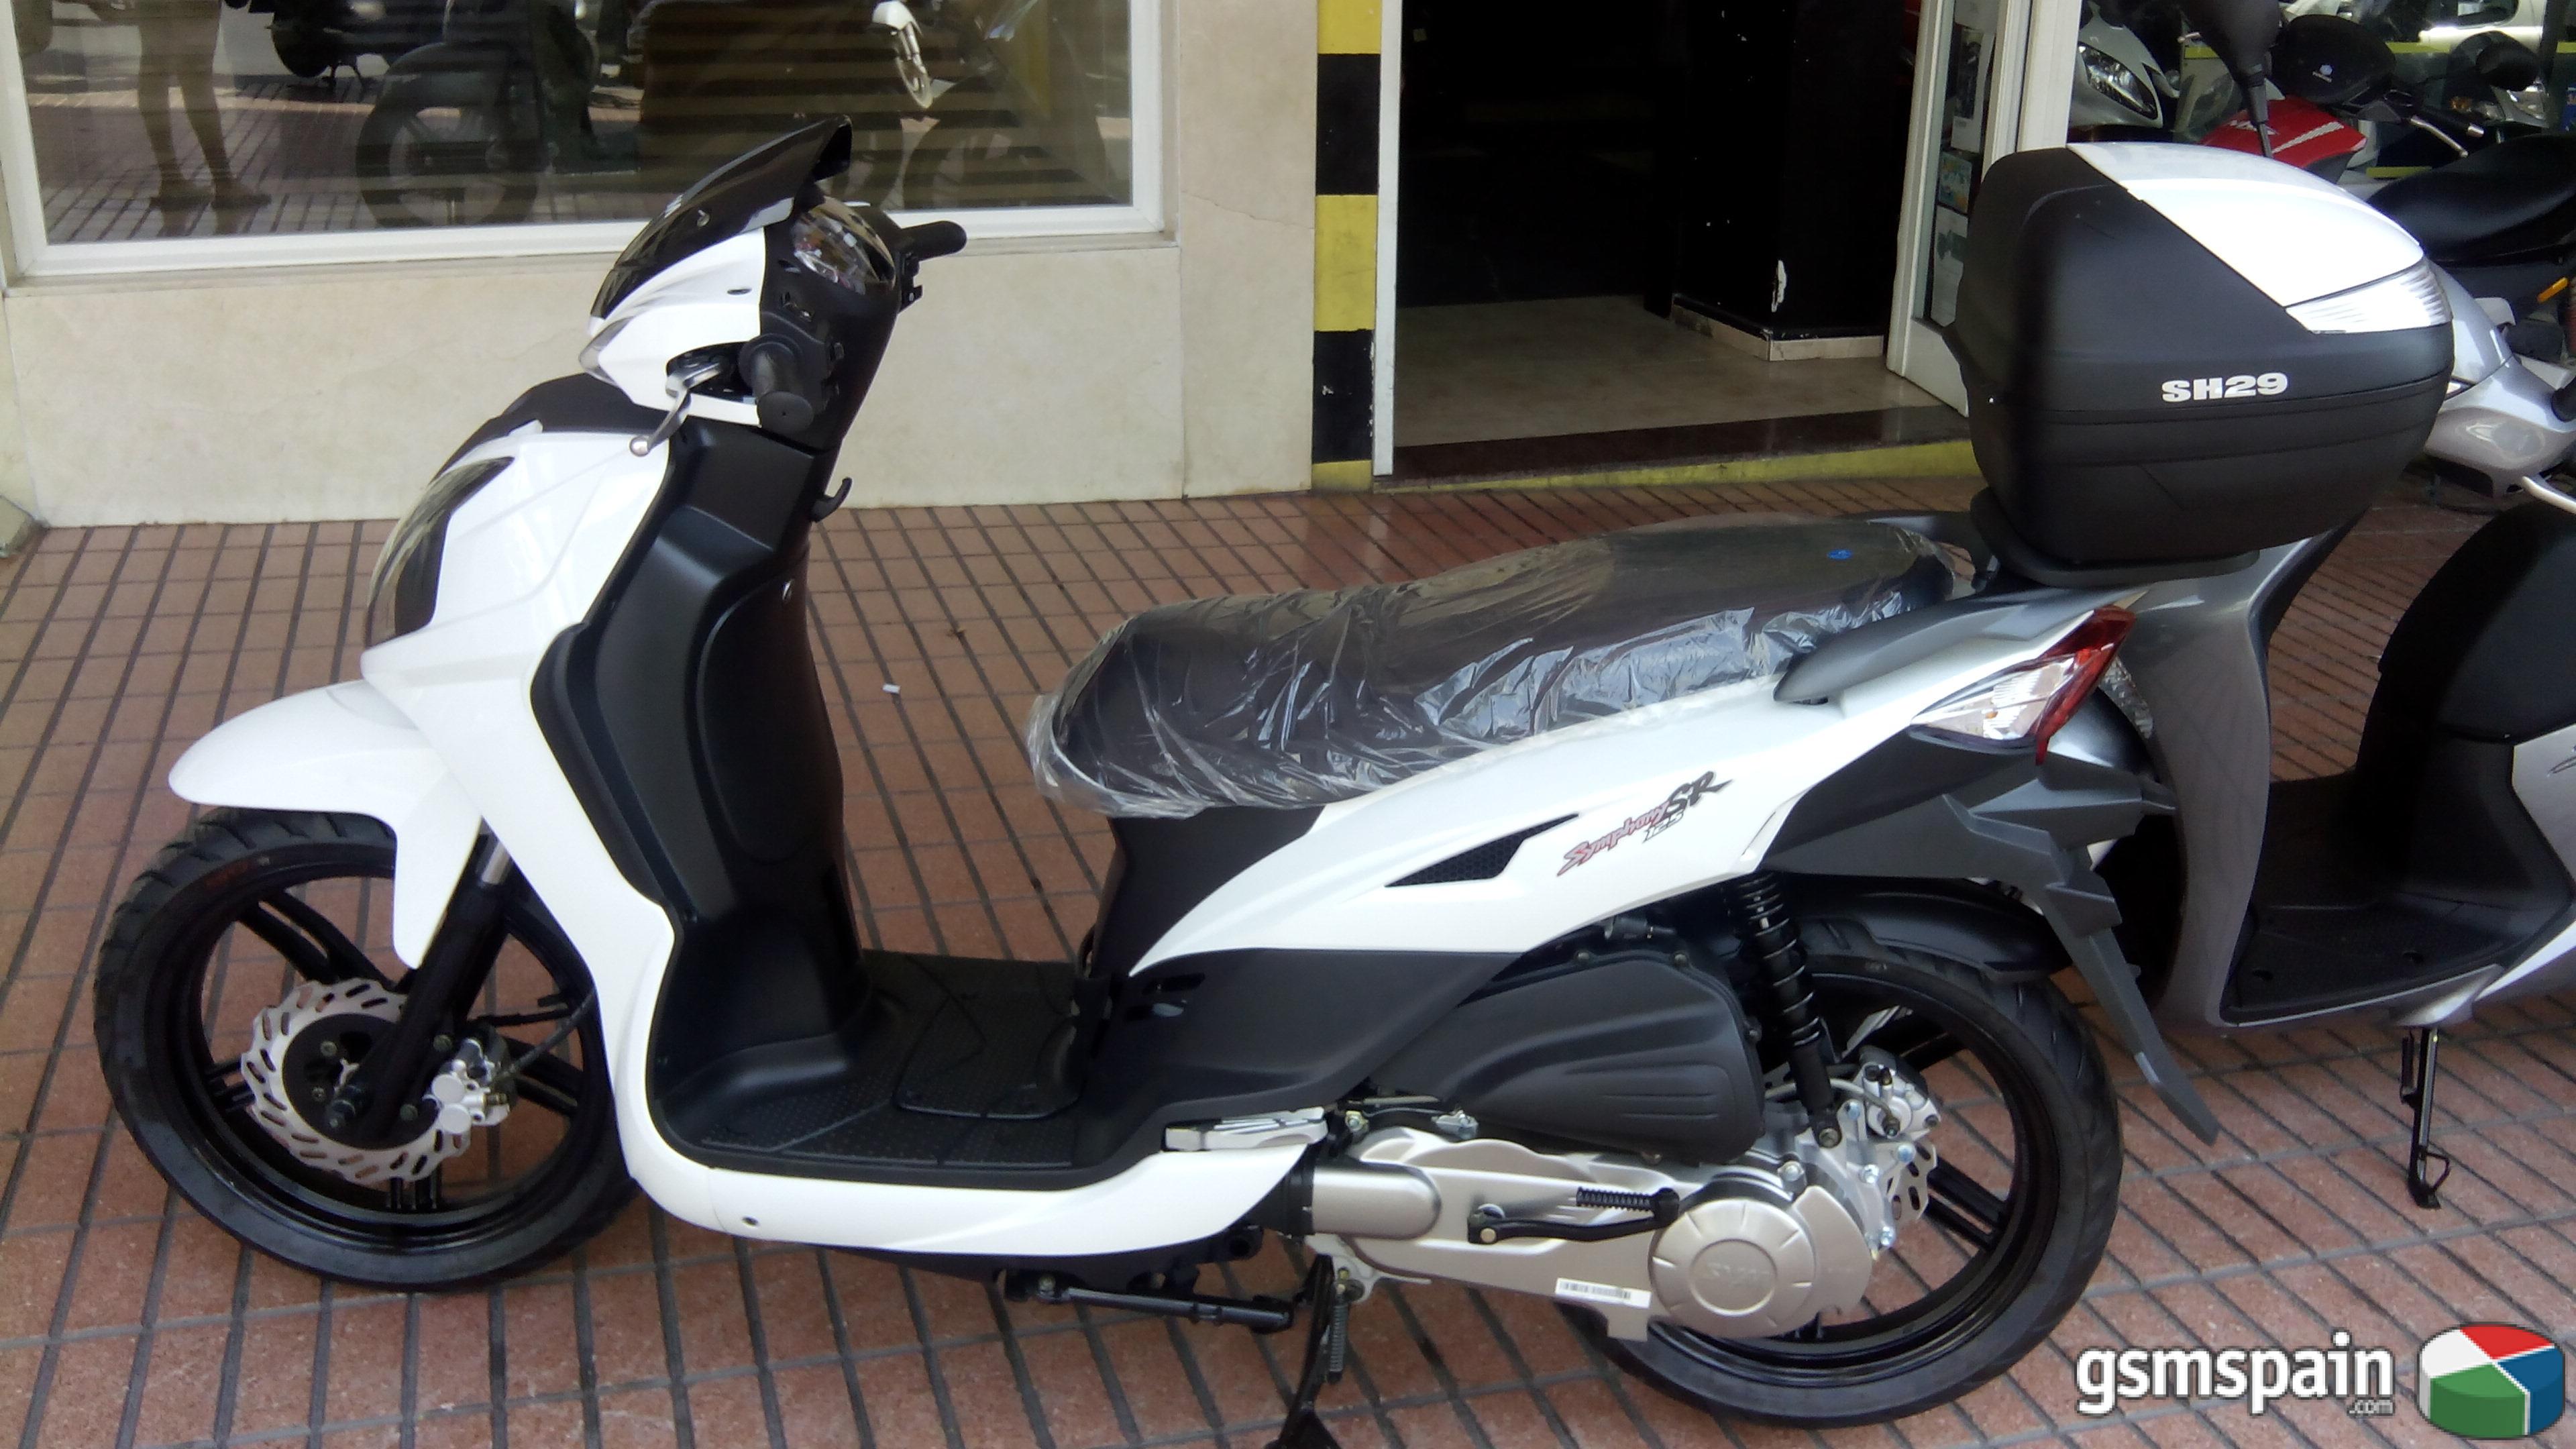 [AYUDA] Consejo scooter 125cc para ciudad y carretera eventualmente